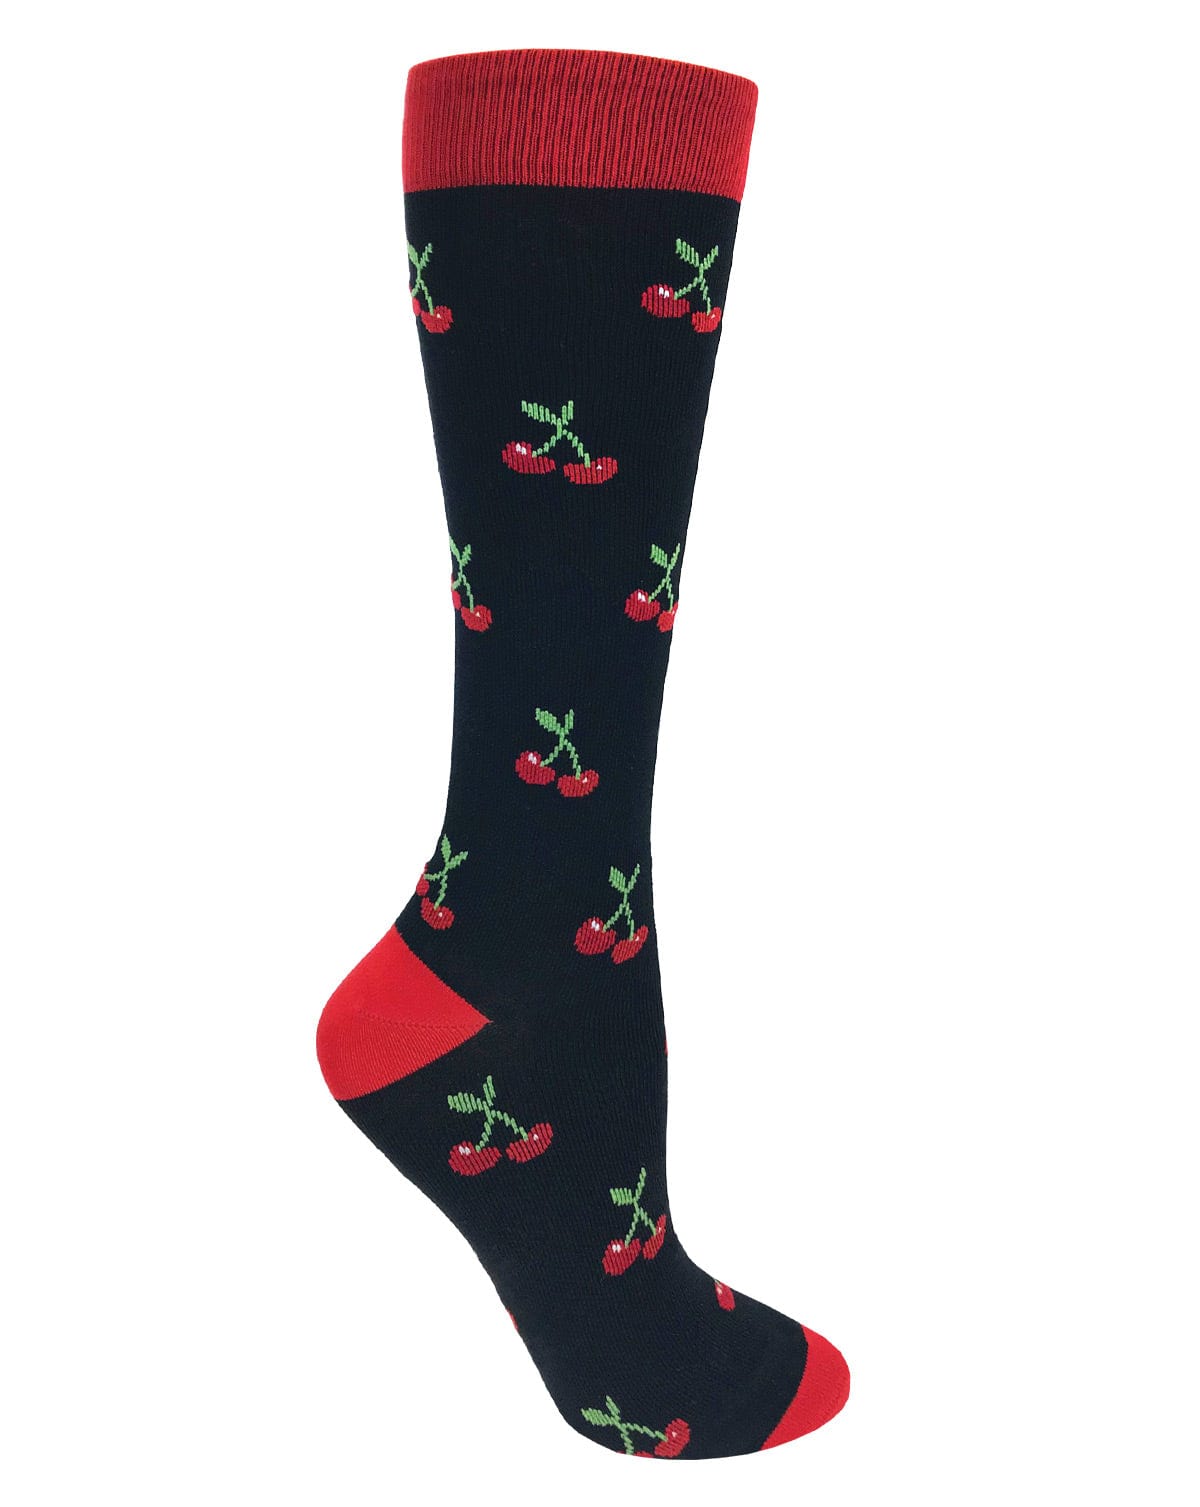 Prestige Medical Socks Cherries on Black Prestige 30cm Premium Knit Compression Socks